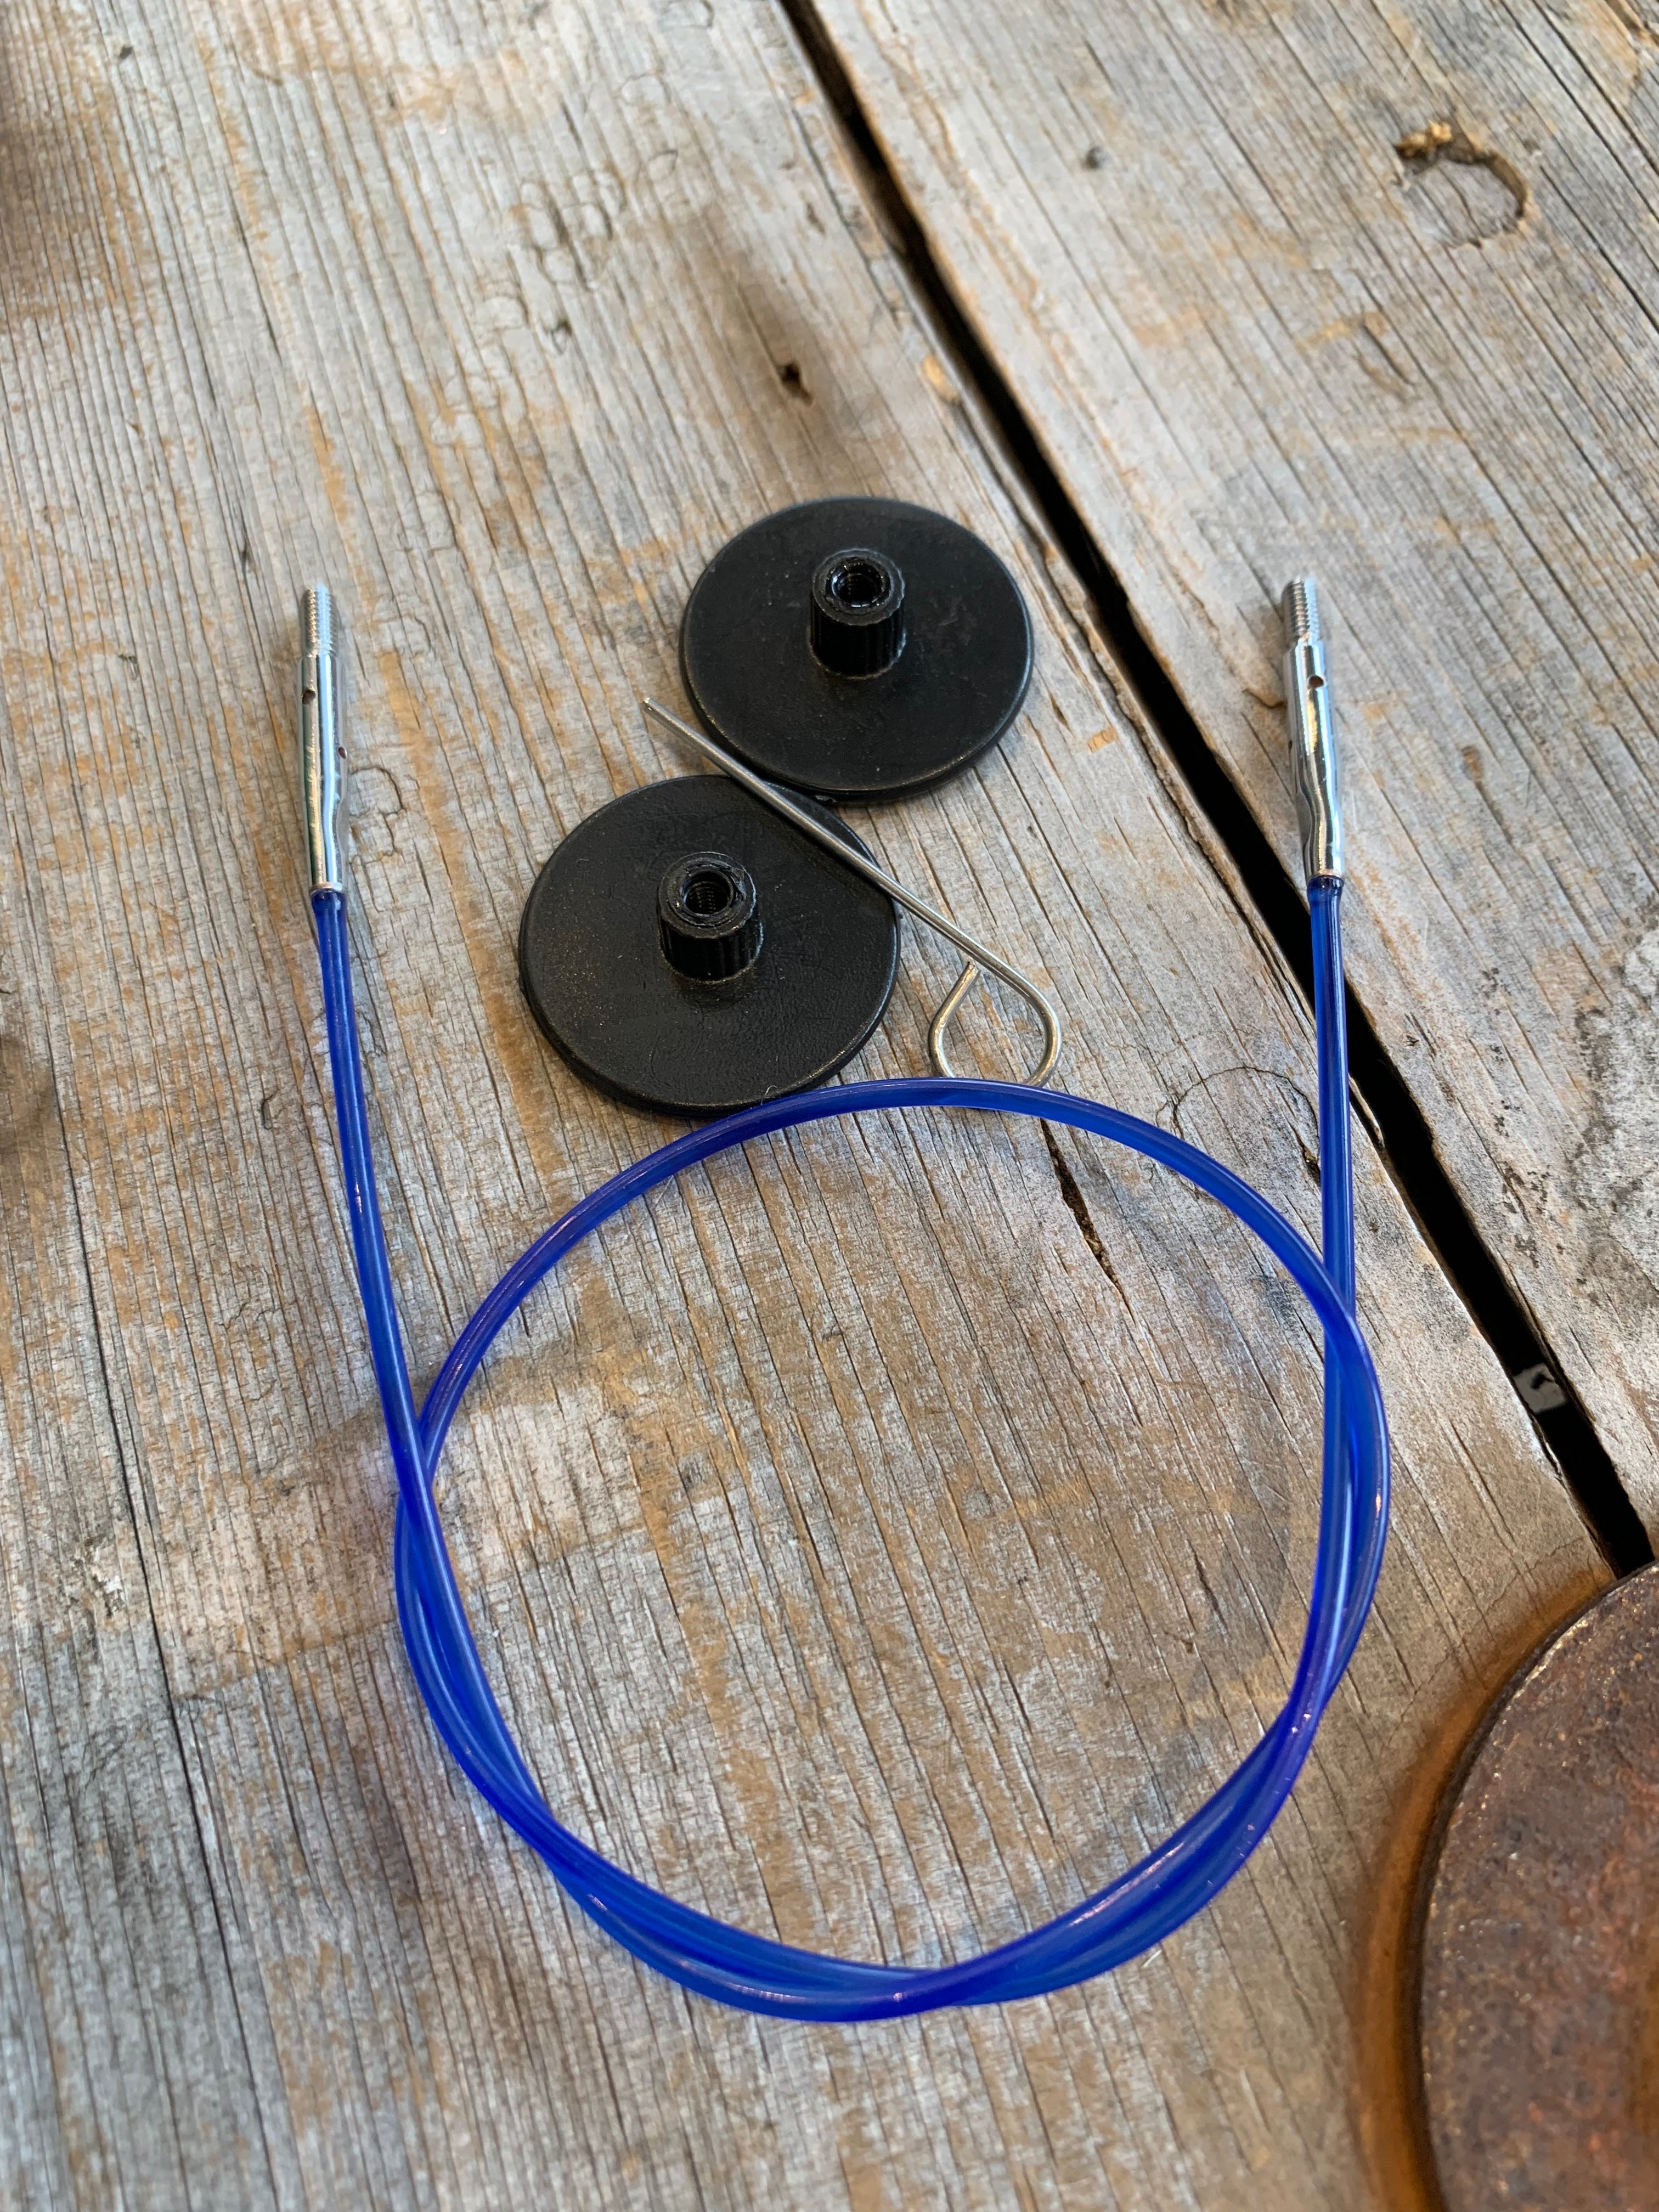 Knitter’s Pride - Câbles colorés pour aiguilles interchangeables / colored Interchangeable needle cord